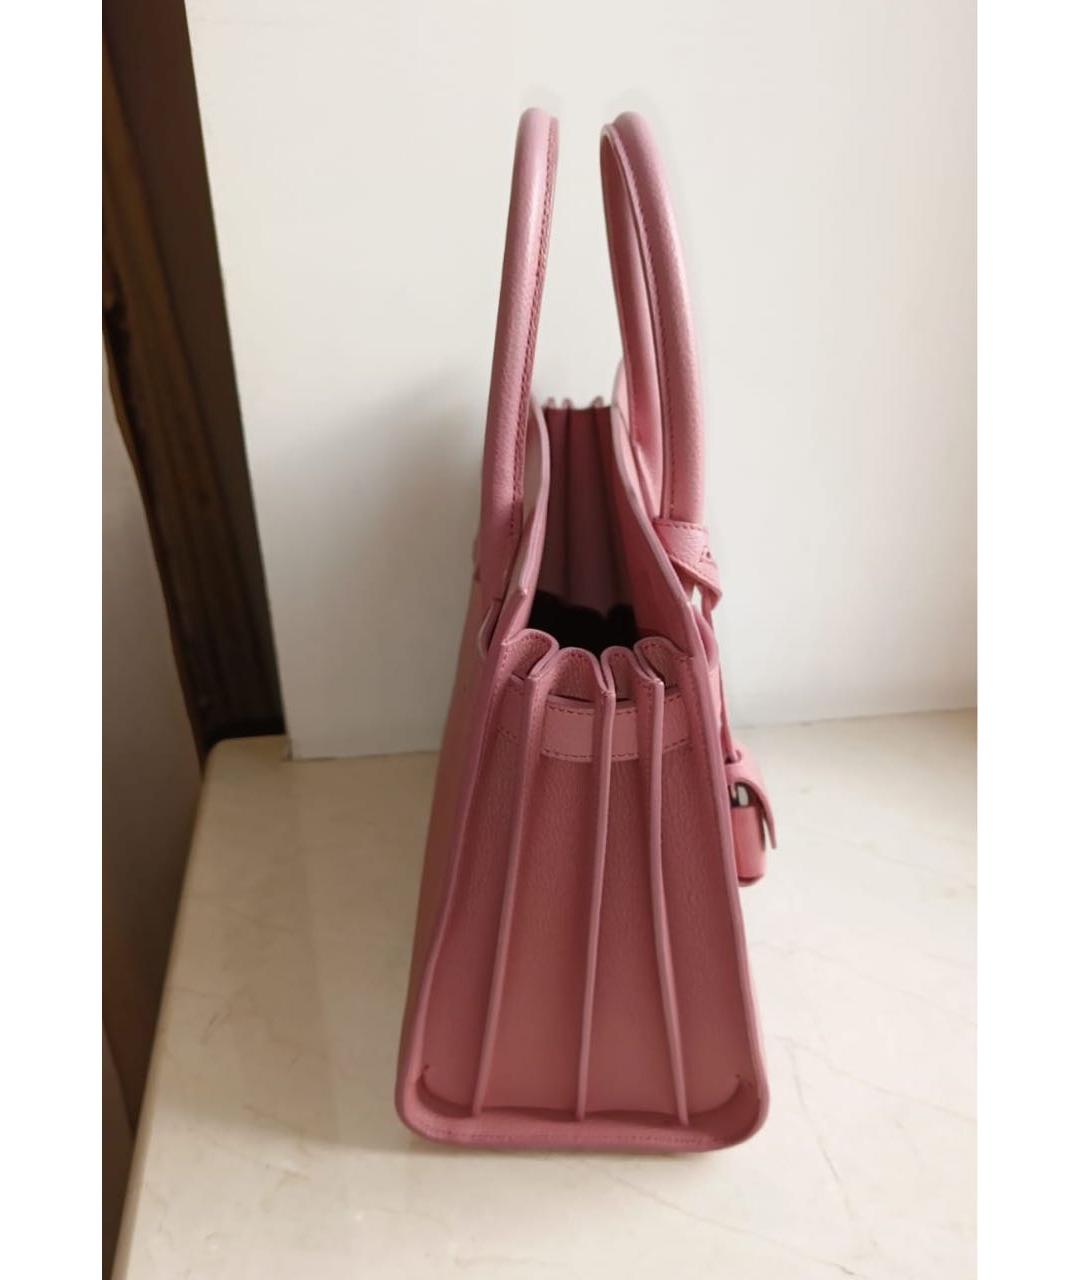 SAINT LAURENT Розовая сумка с короткими ручками, фото 2